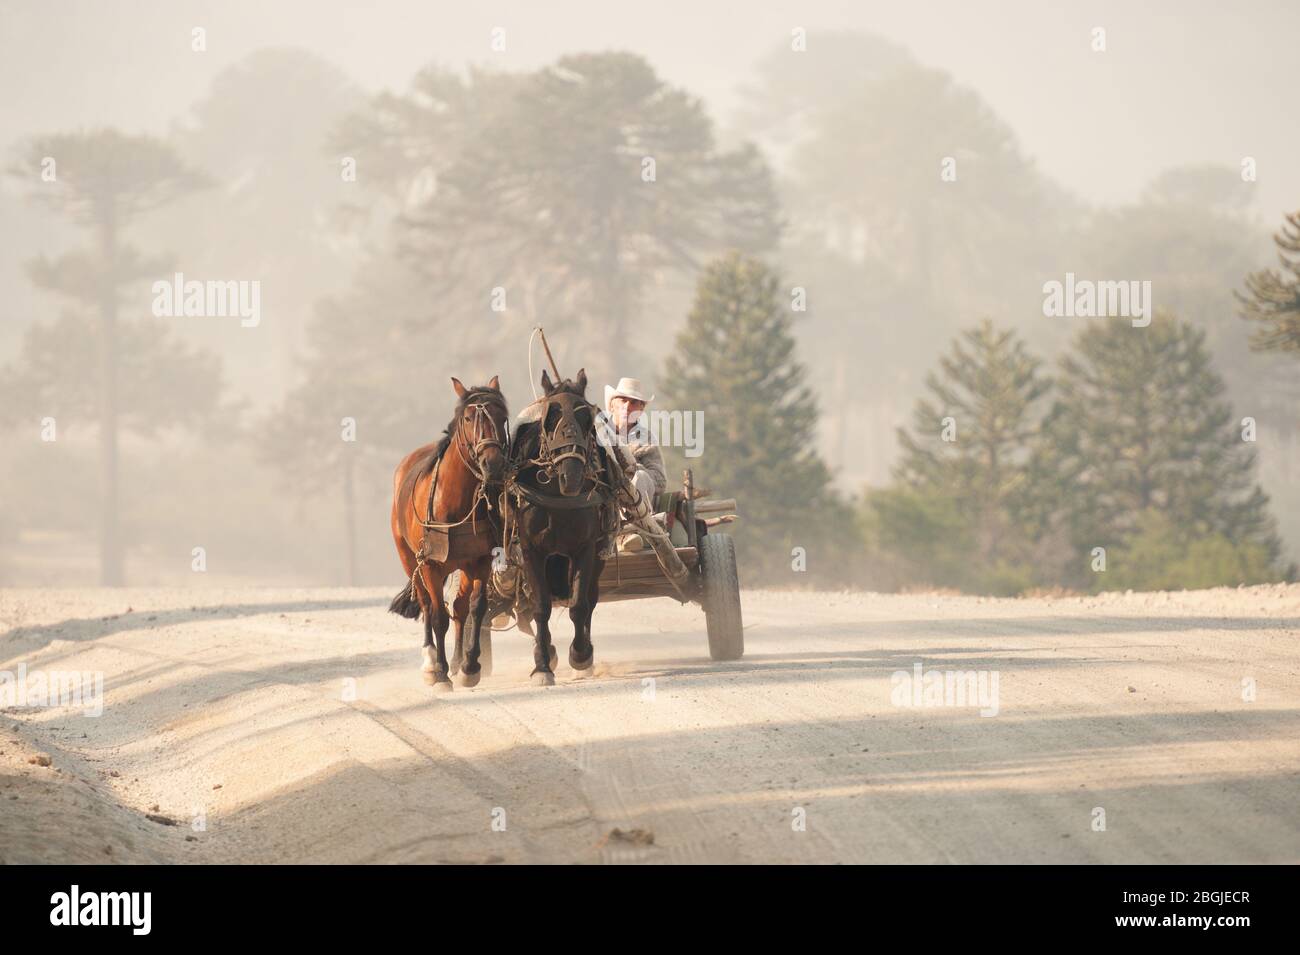 Villa Pehuenia, Argentina -17 de enero de 2014: Carro de madera de caballos con dos caballos que bajan por un camino de tierra con araucaria en el fondo. Foto de stock